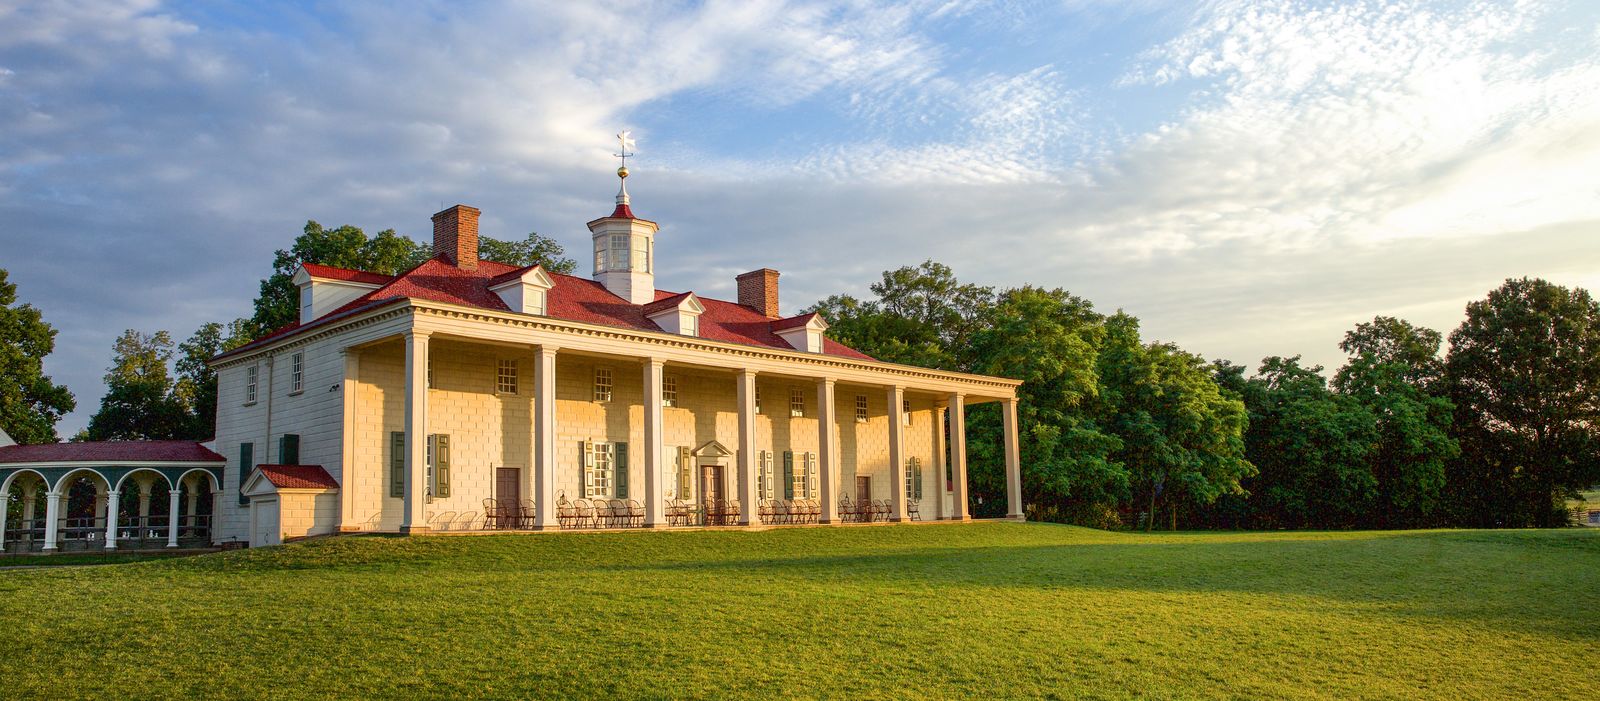 Der Landsitz Mount Vernon in Virginia